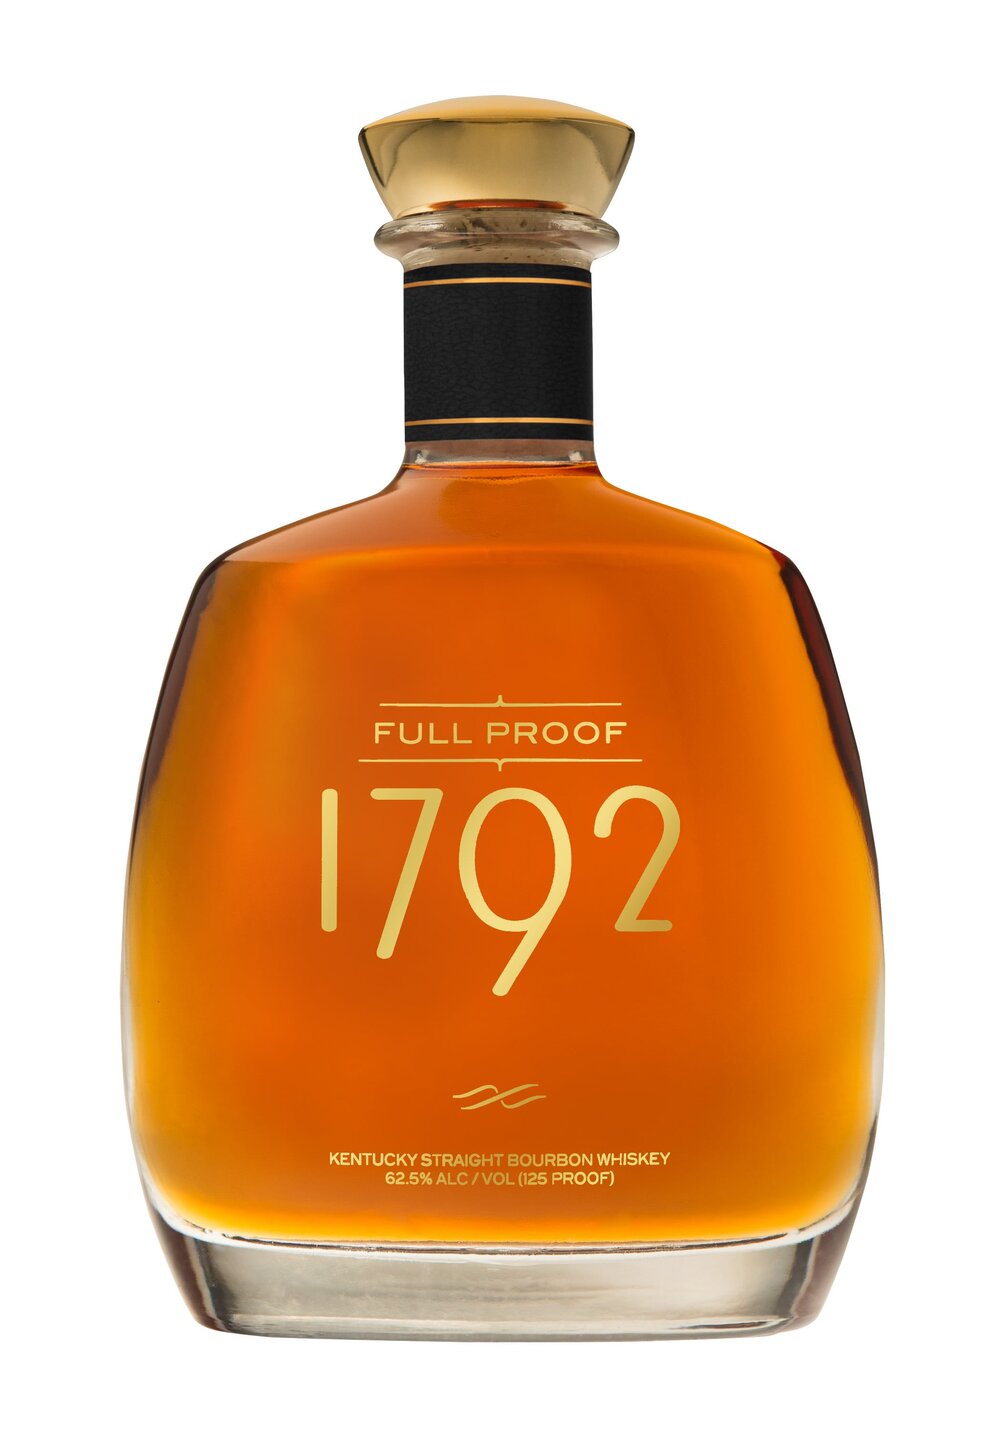 1792-Full-Proof-Bottle-min.jpg